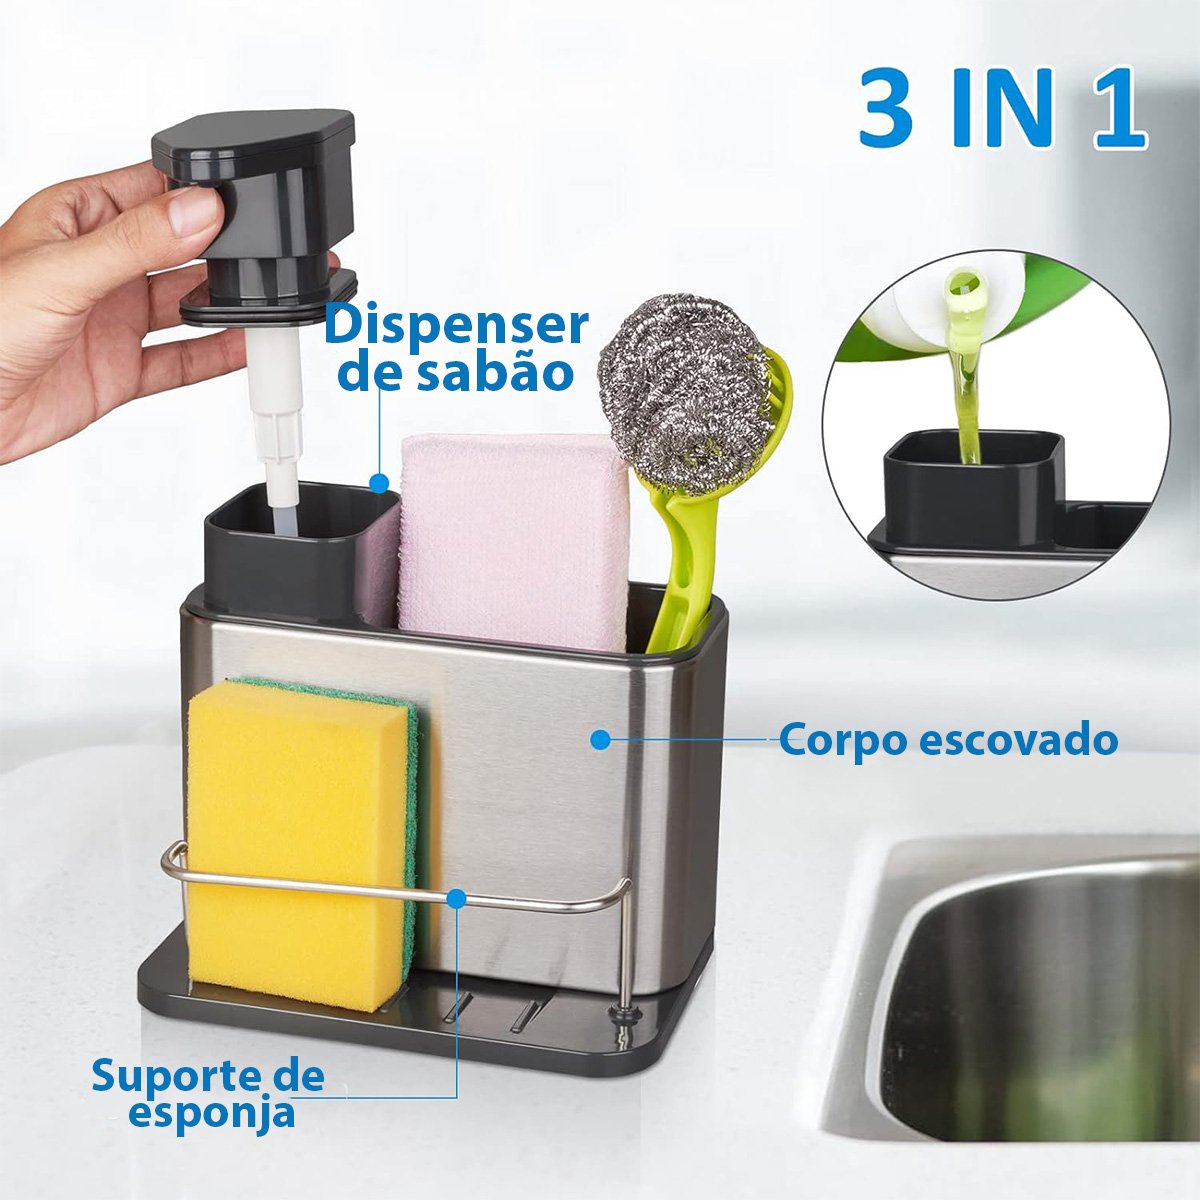 Dispenser Porta Detergente Escorredor Esponja 3 em 1 Inox Cozinha Pia Balcao Limpeza Higiene Escorre - 7